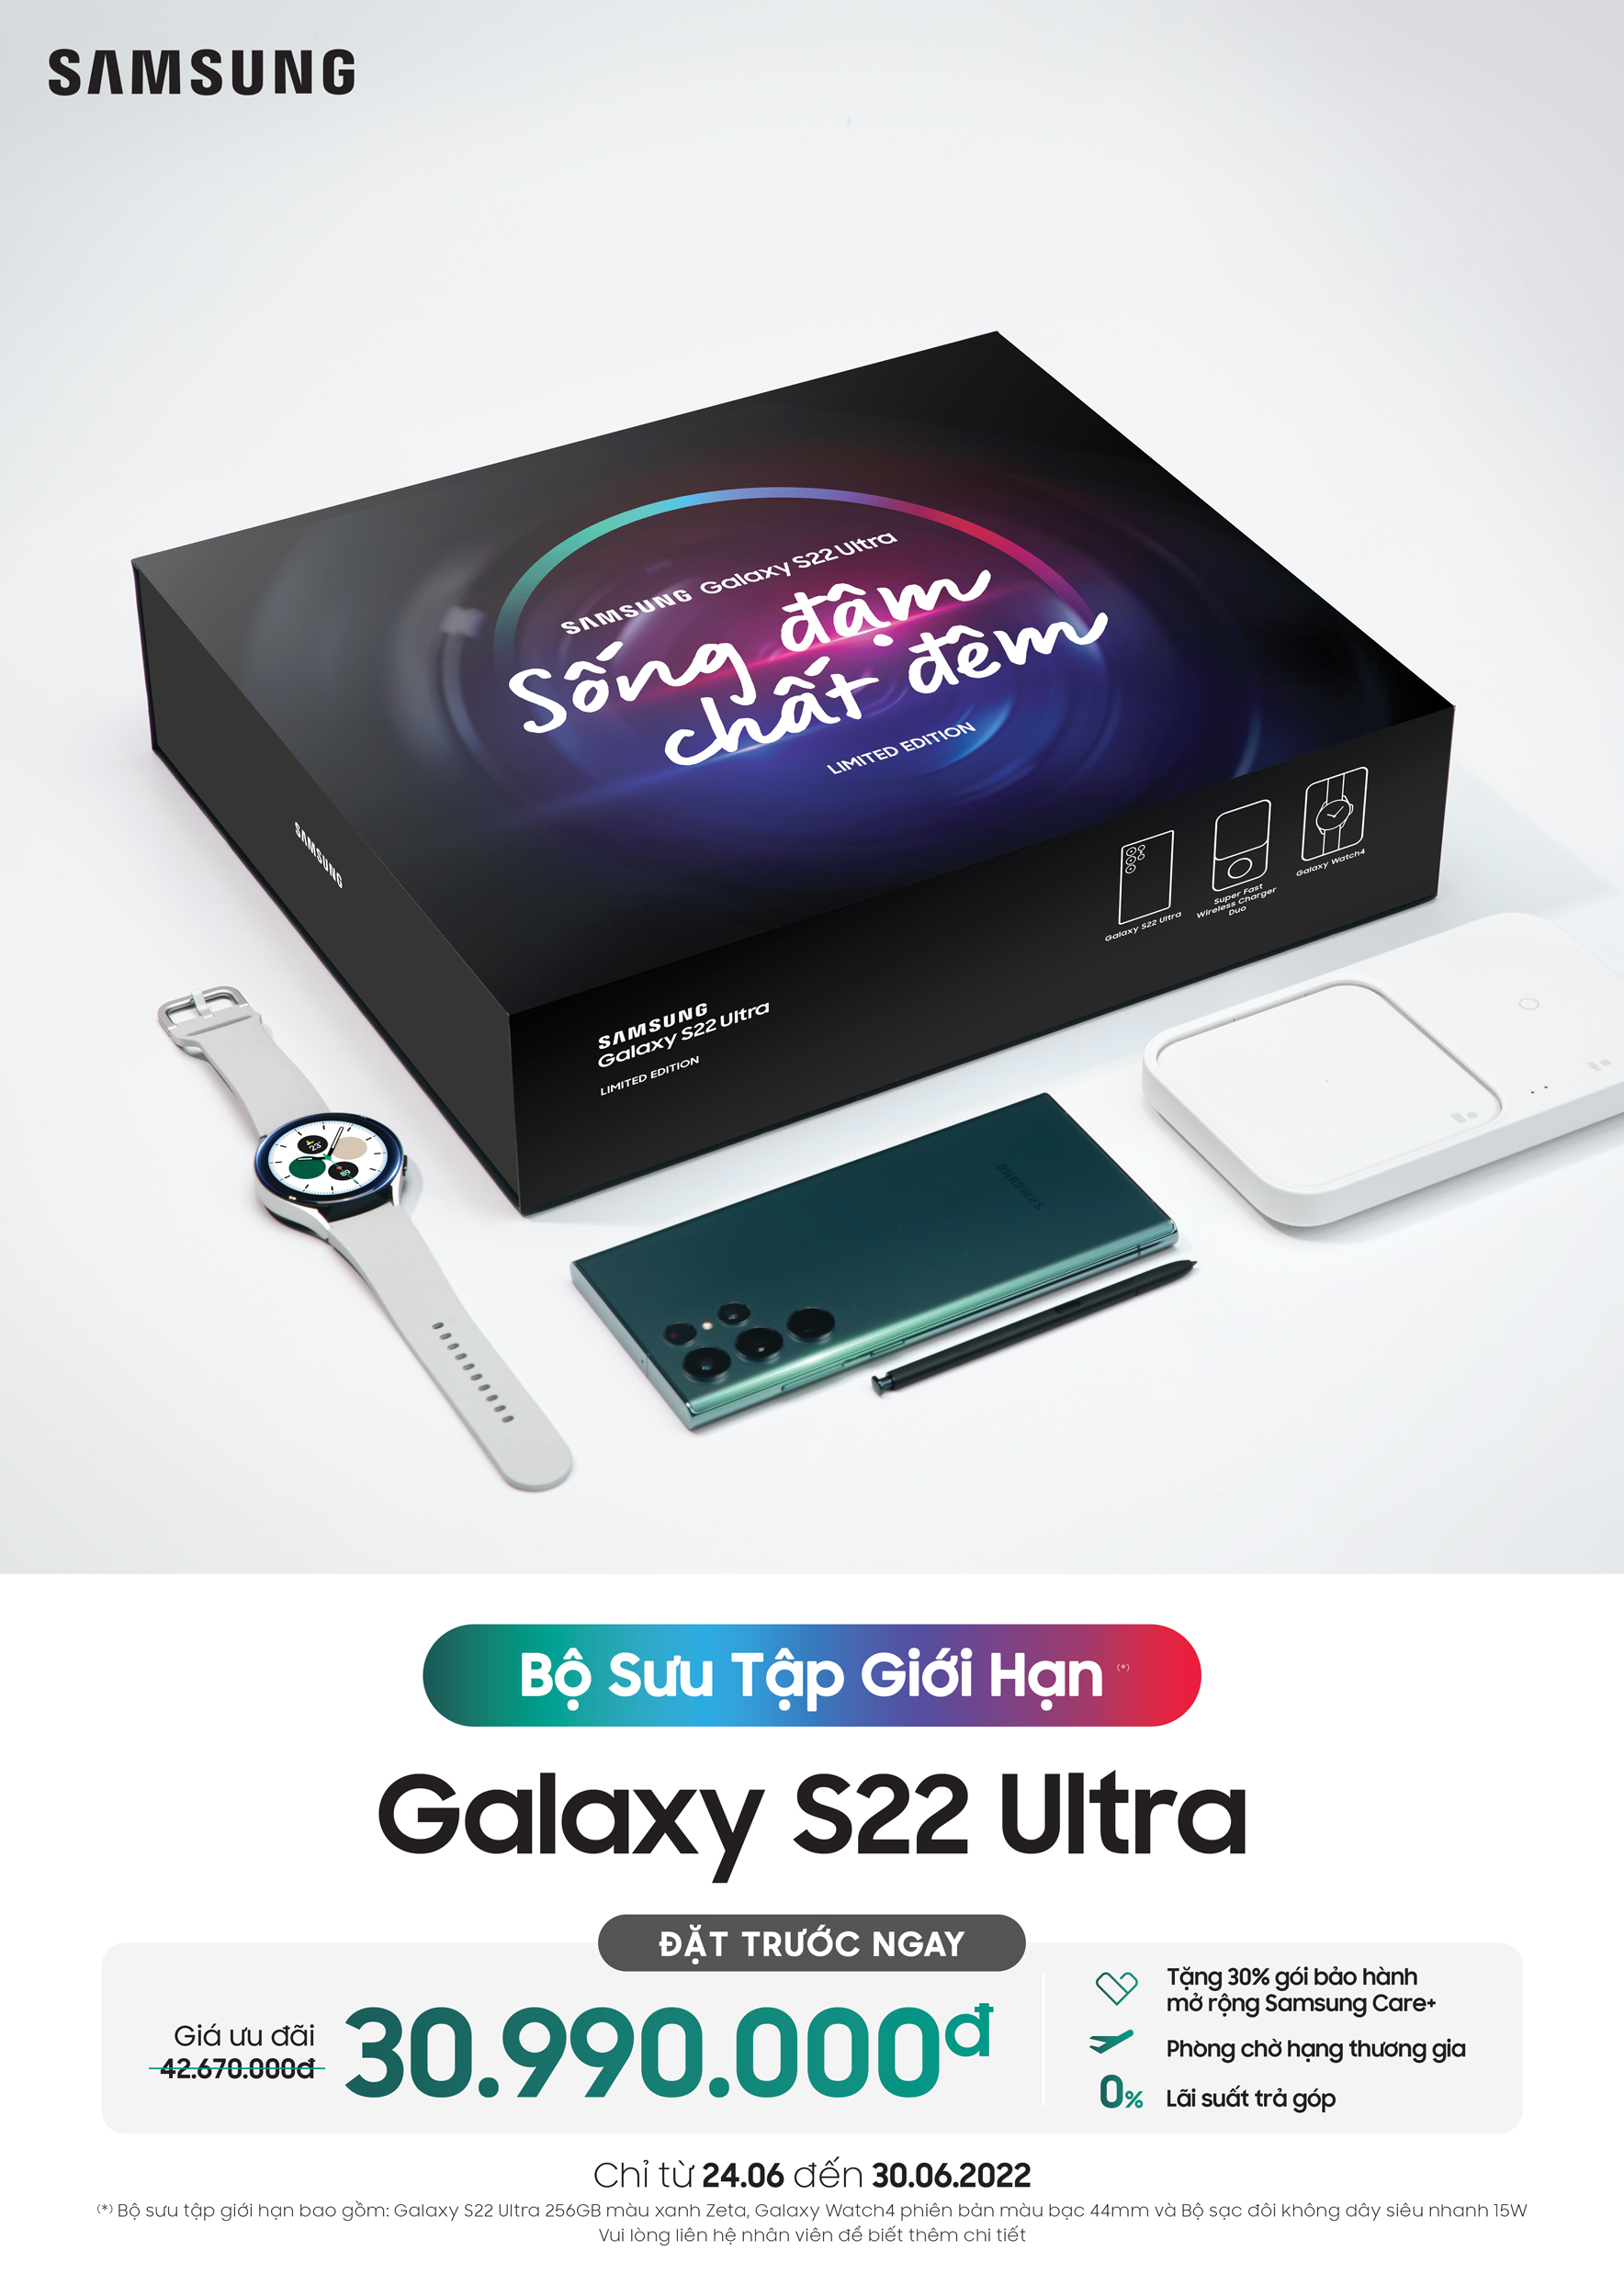 Samsung ra mắt bộ sưu tập Galaxy S22 Ultra “Sống Đậm Chất Đêm” số lượng giới hạn